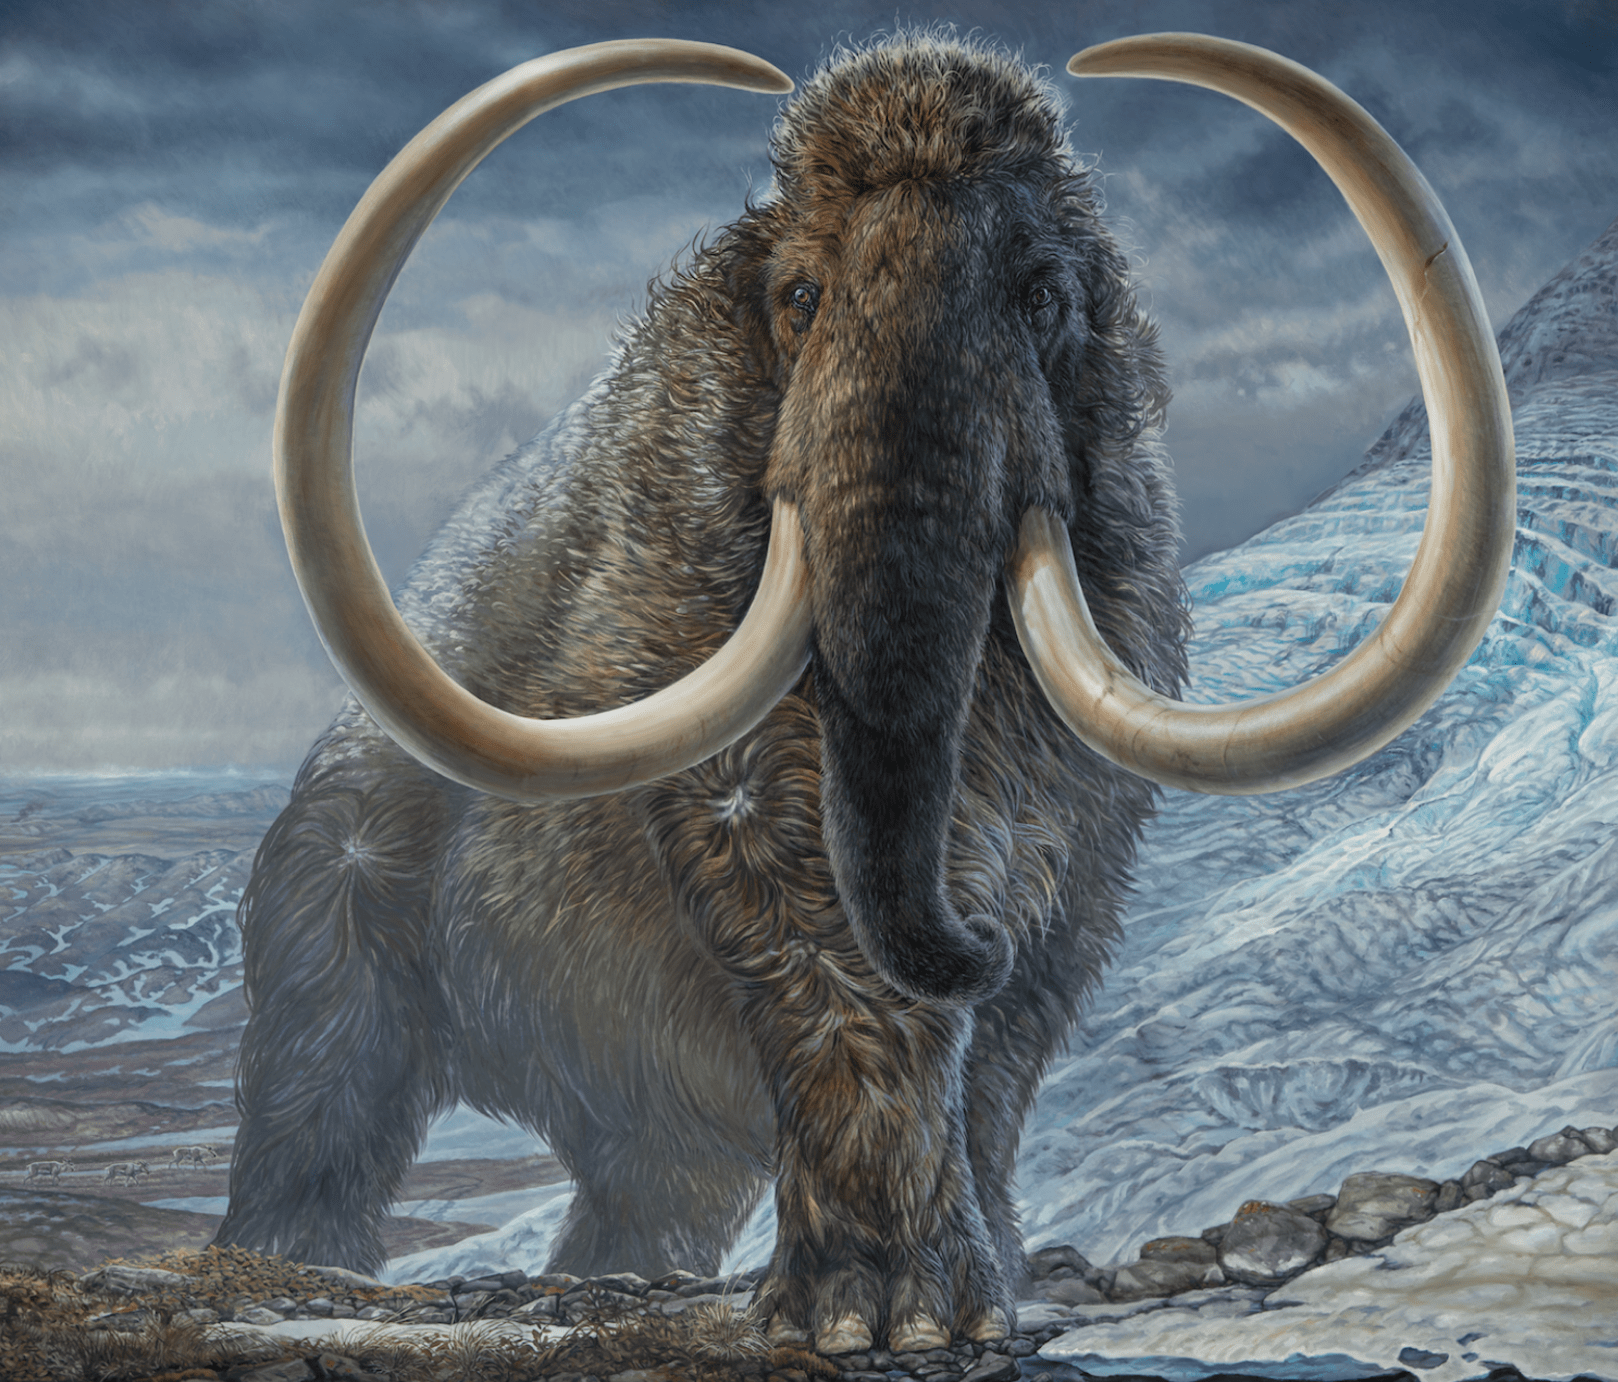 原创史无前例的研究科学家重现了一头长毛猛犸象从生到死的生活史